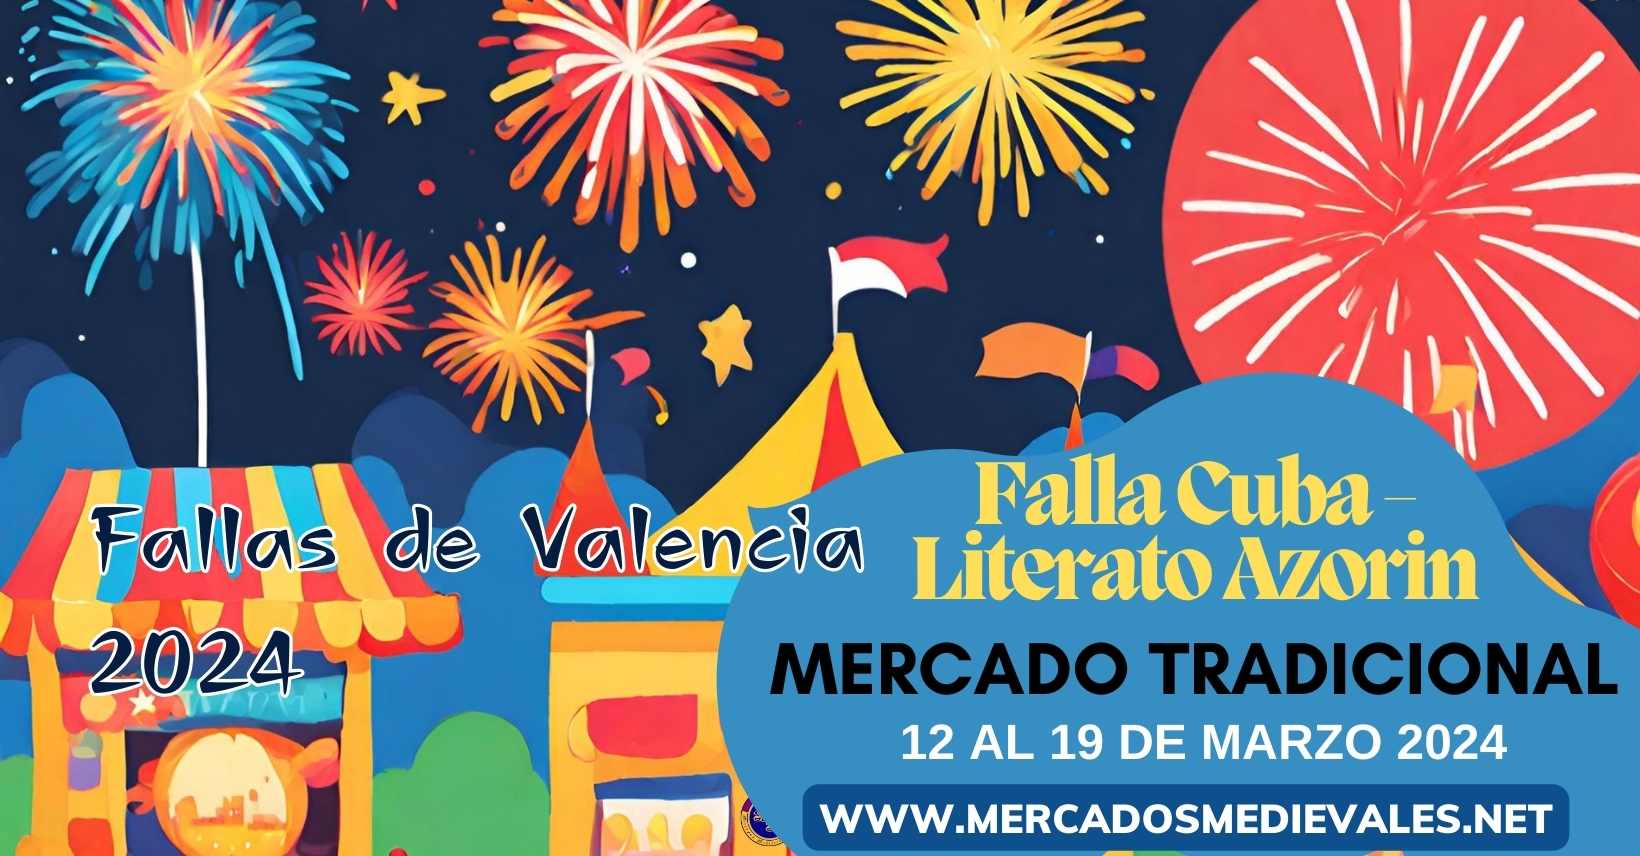 mercadosmedievales.net – Mercado Tradicional en Falla Cuba - Literato Azorín de Valencia 2024 redes